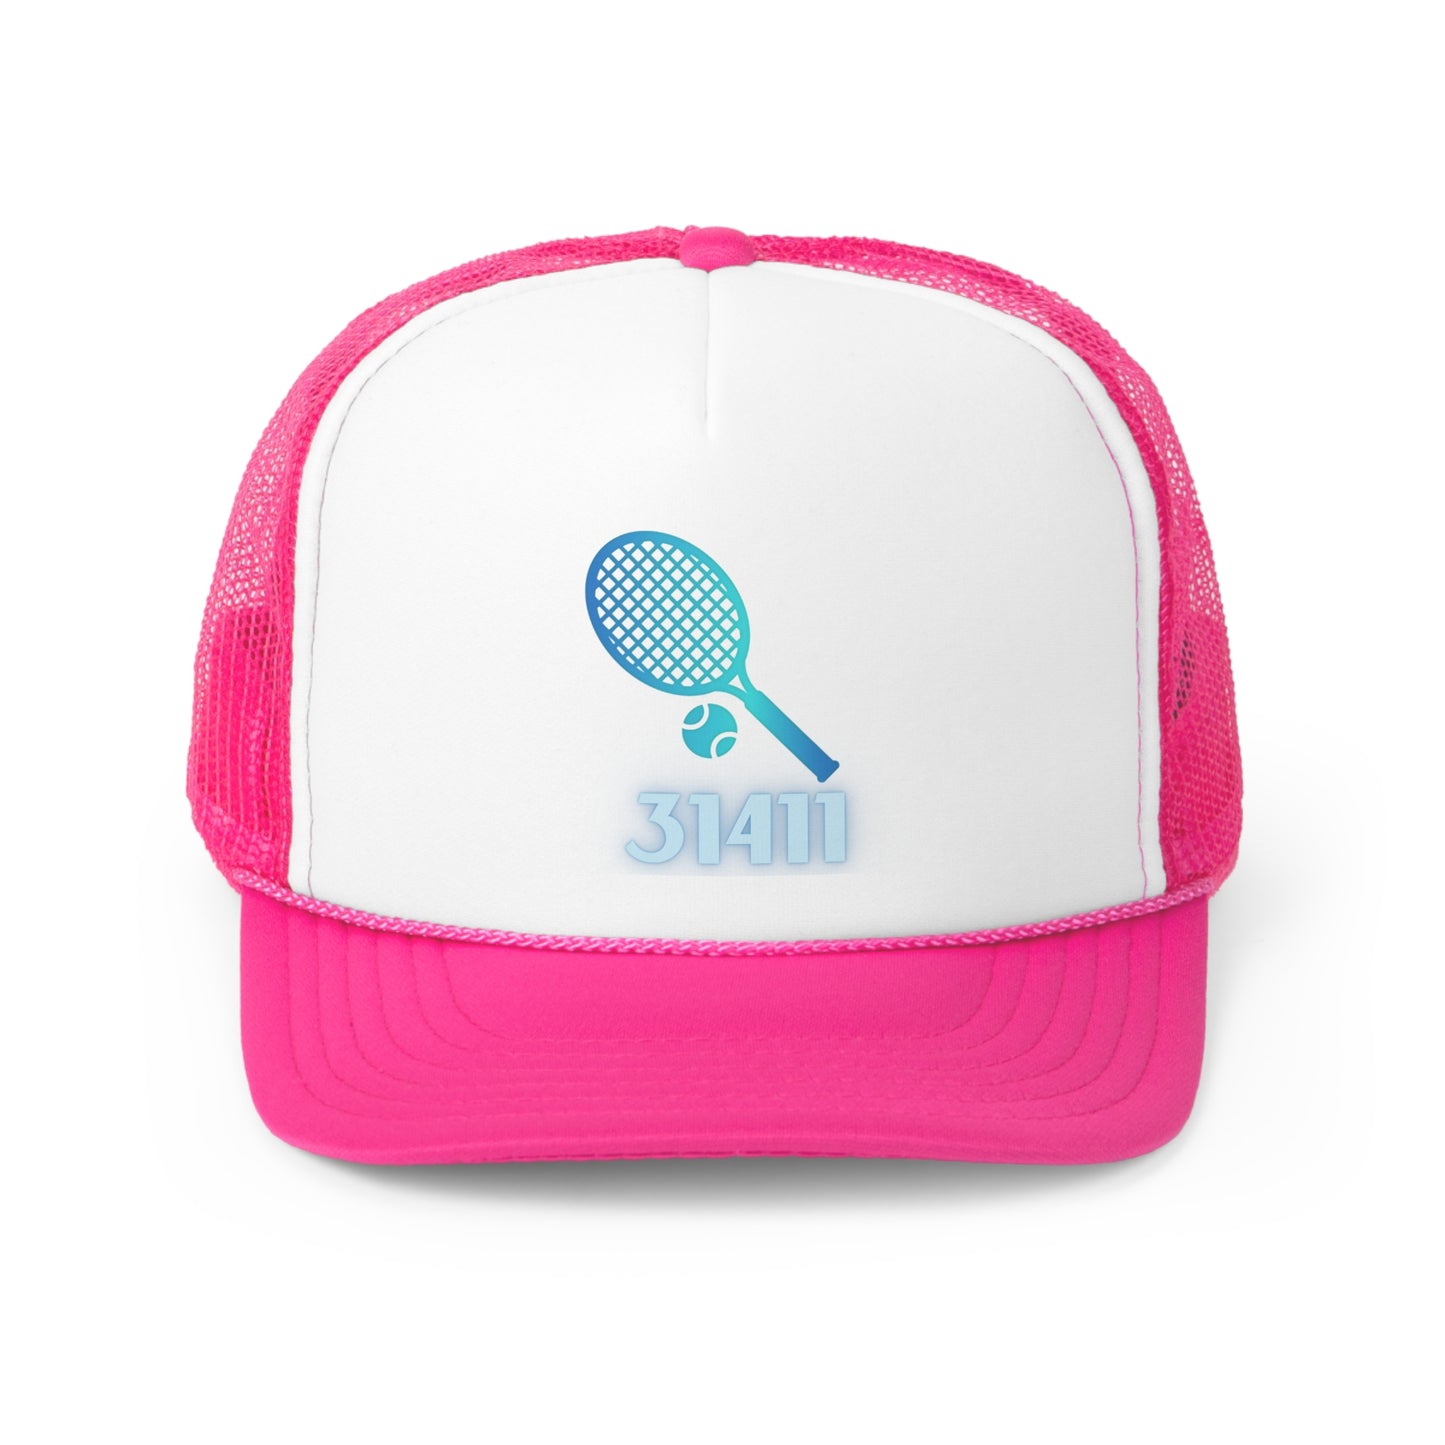 Tennis hat